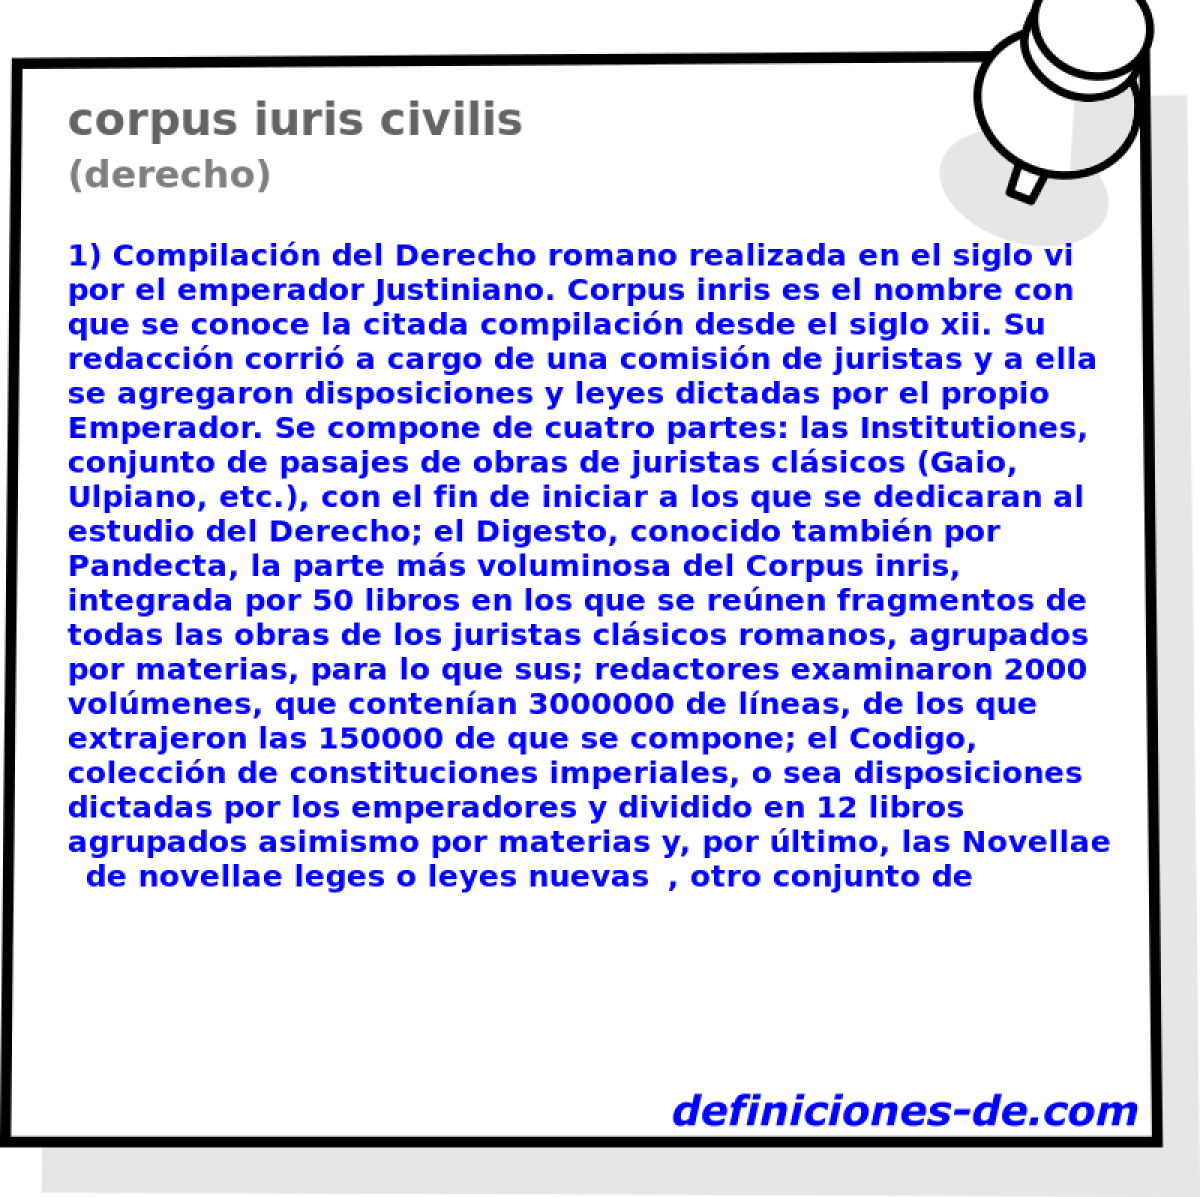 corpus iuris civilis (derecho)